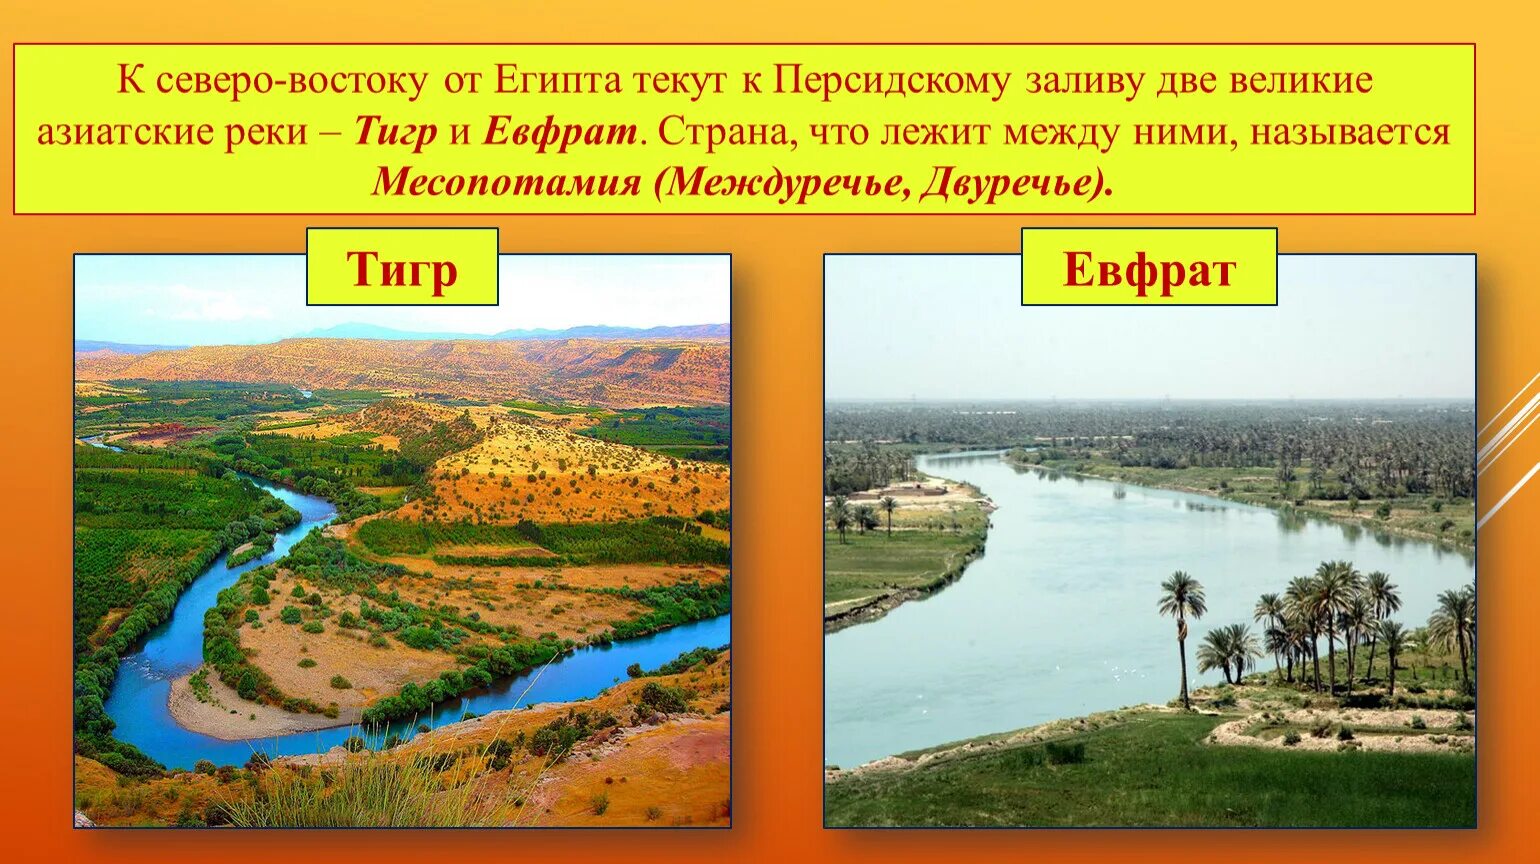 Евфрат где находится в древности. Устье рек тигра и Евфрата. Река тигр Месопотамия. Реки Месопотамии Ефрат.